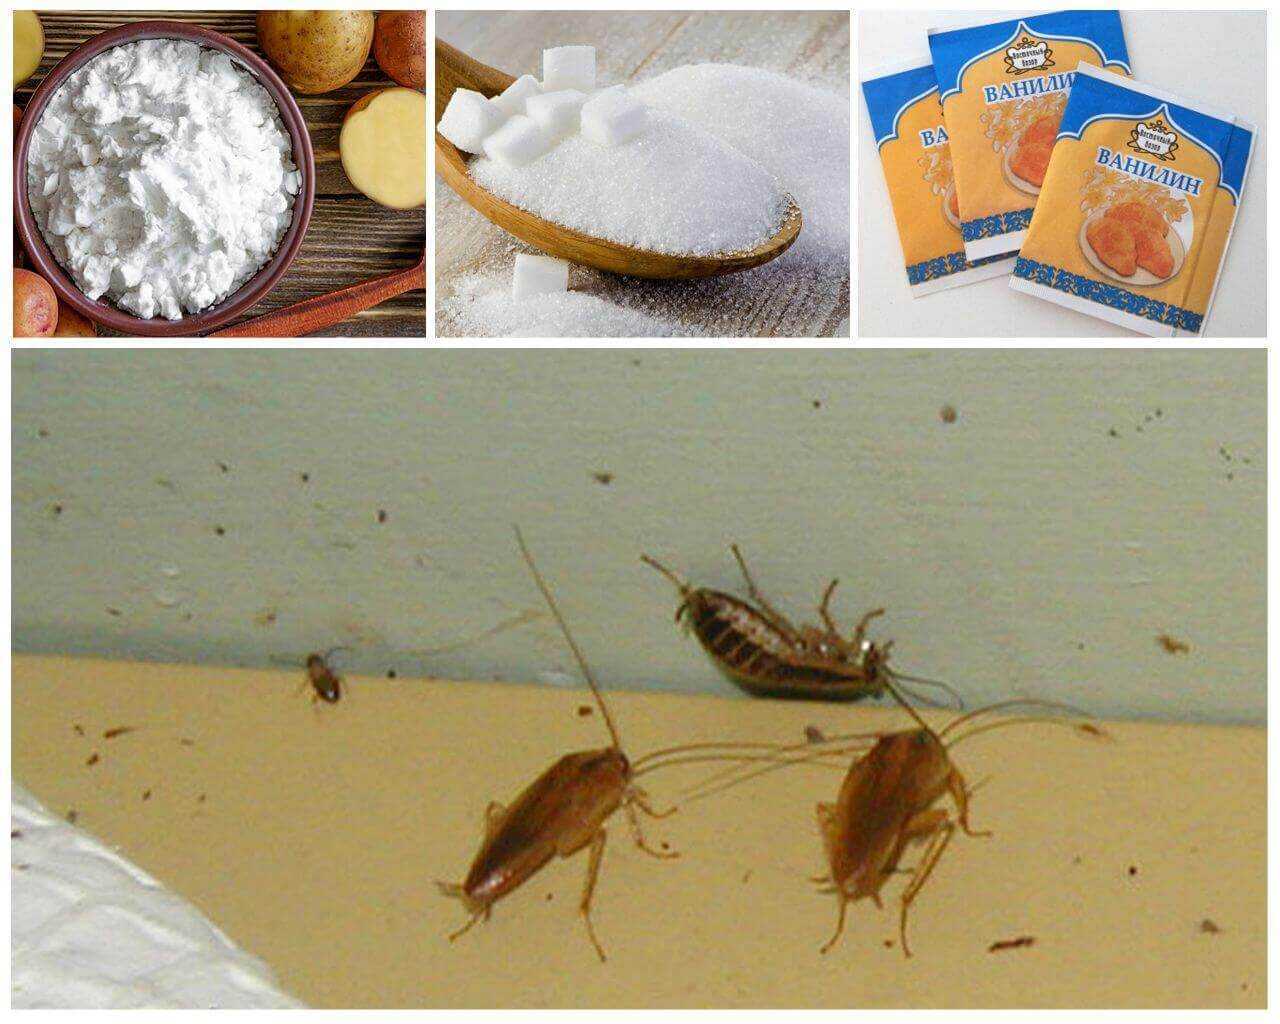 Как эффективно бороться с тараканами в квартире: профессиональные средства, домашние методы борьбы, рекомендации и советы - handskill.ru